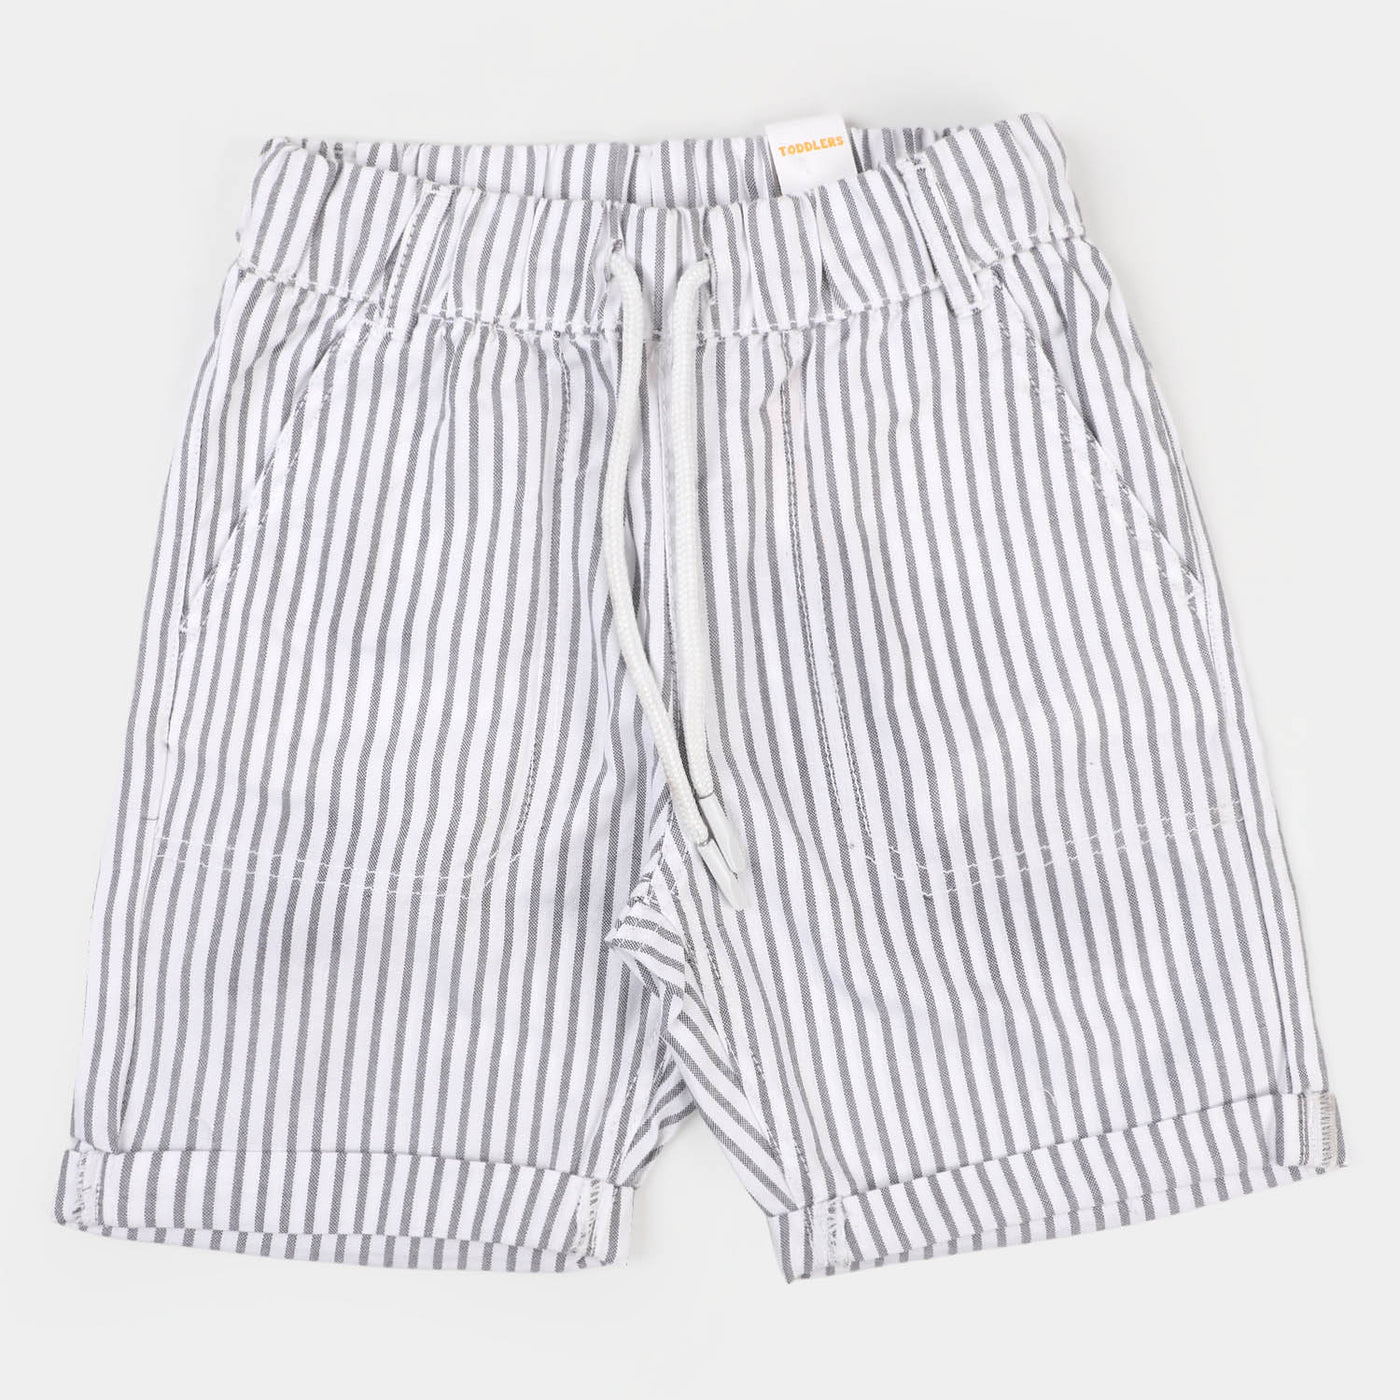 Boys Cotton Short Stripes - White